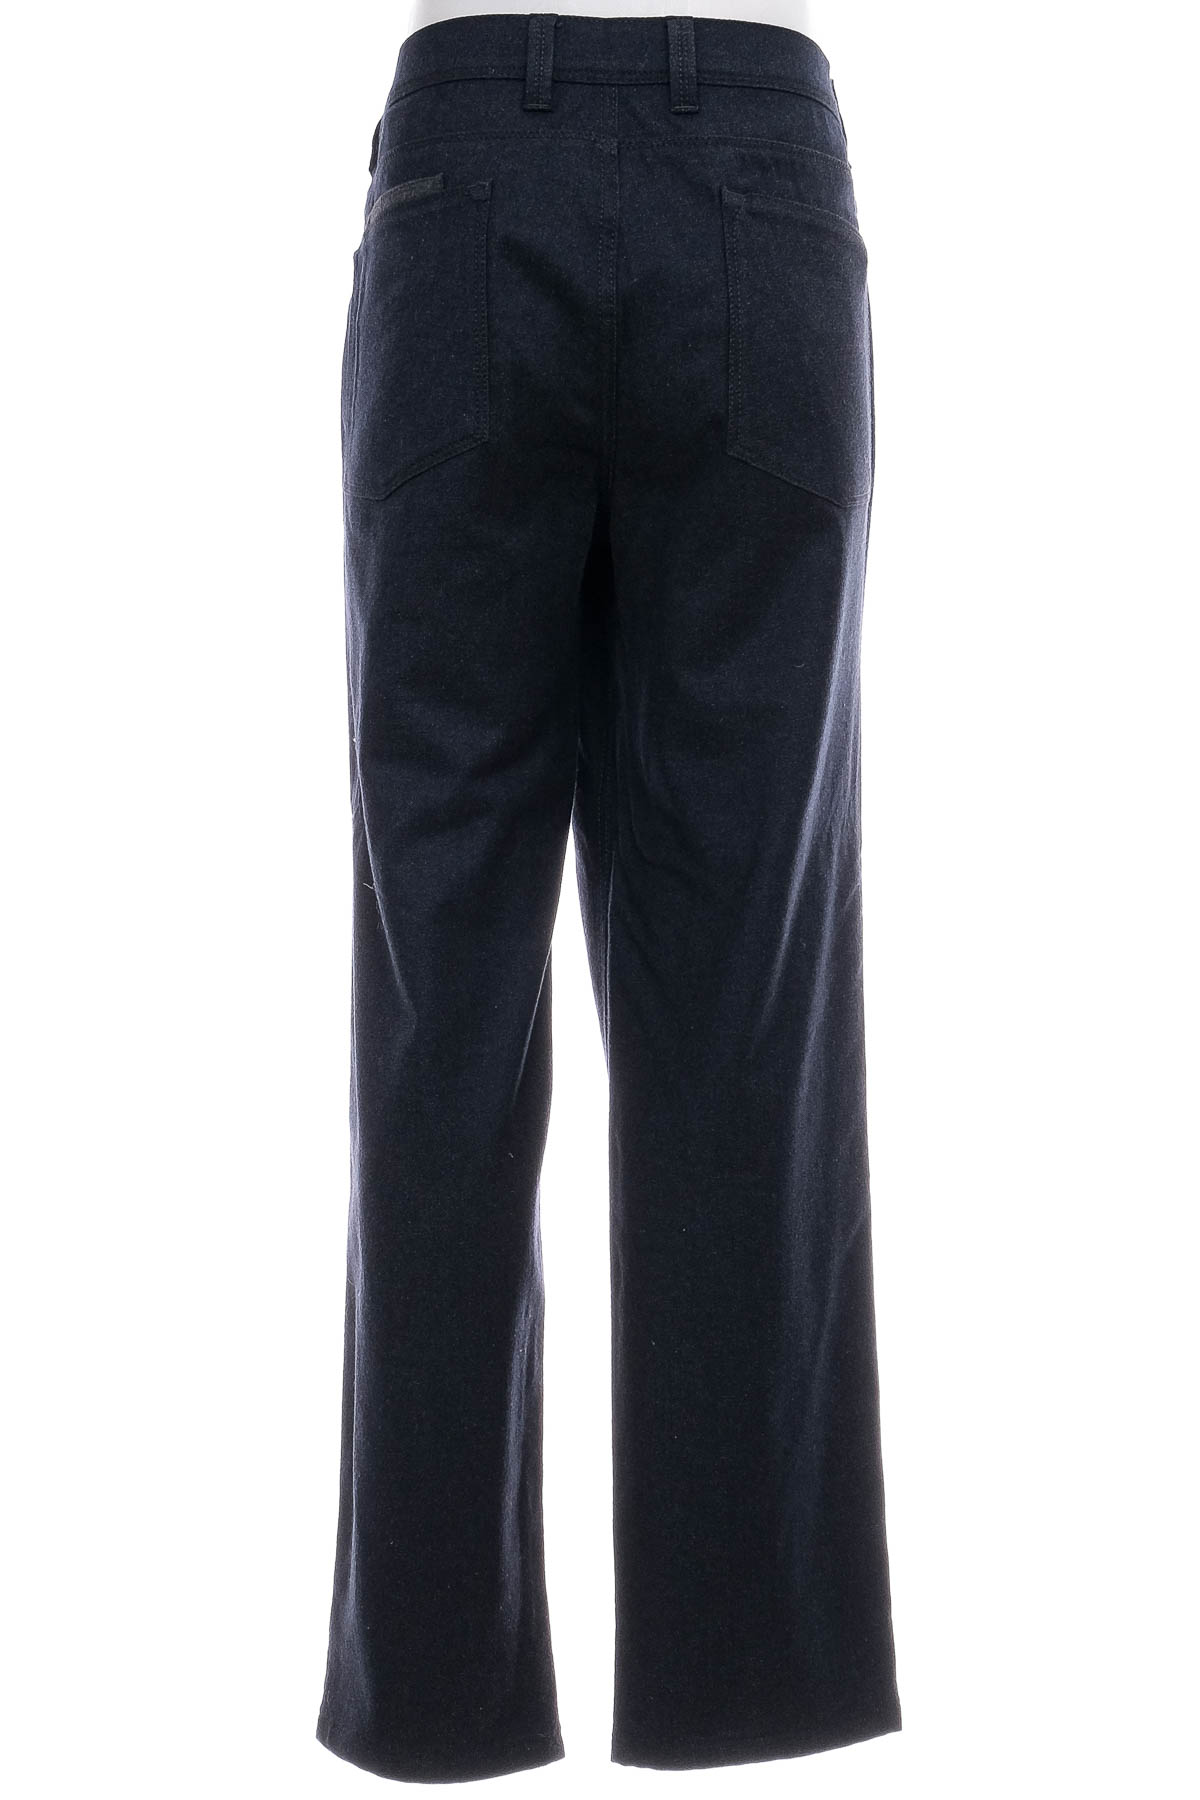 Męskie spodnie - Hirmer - 1